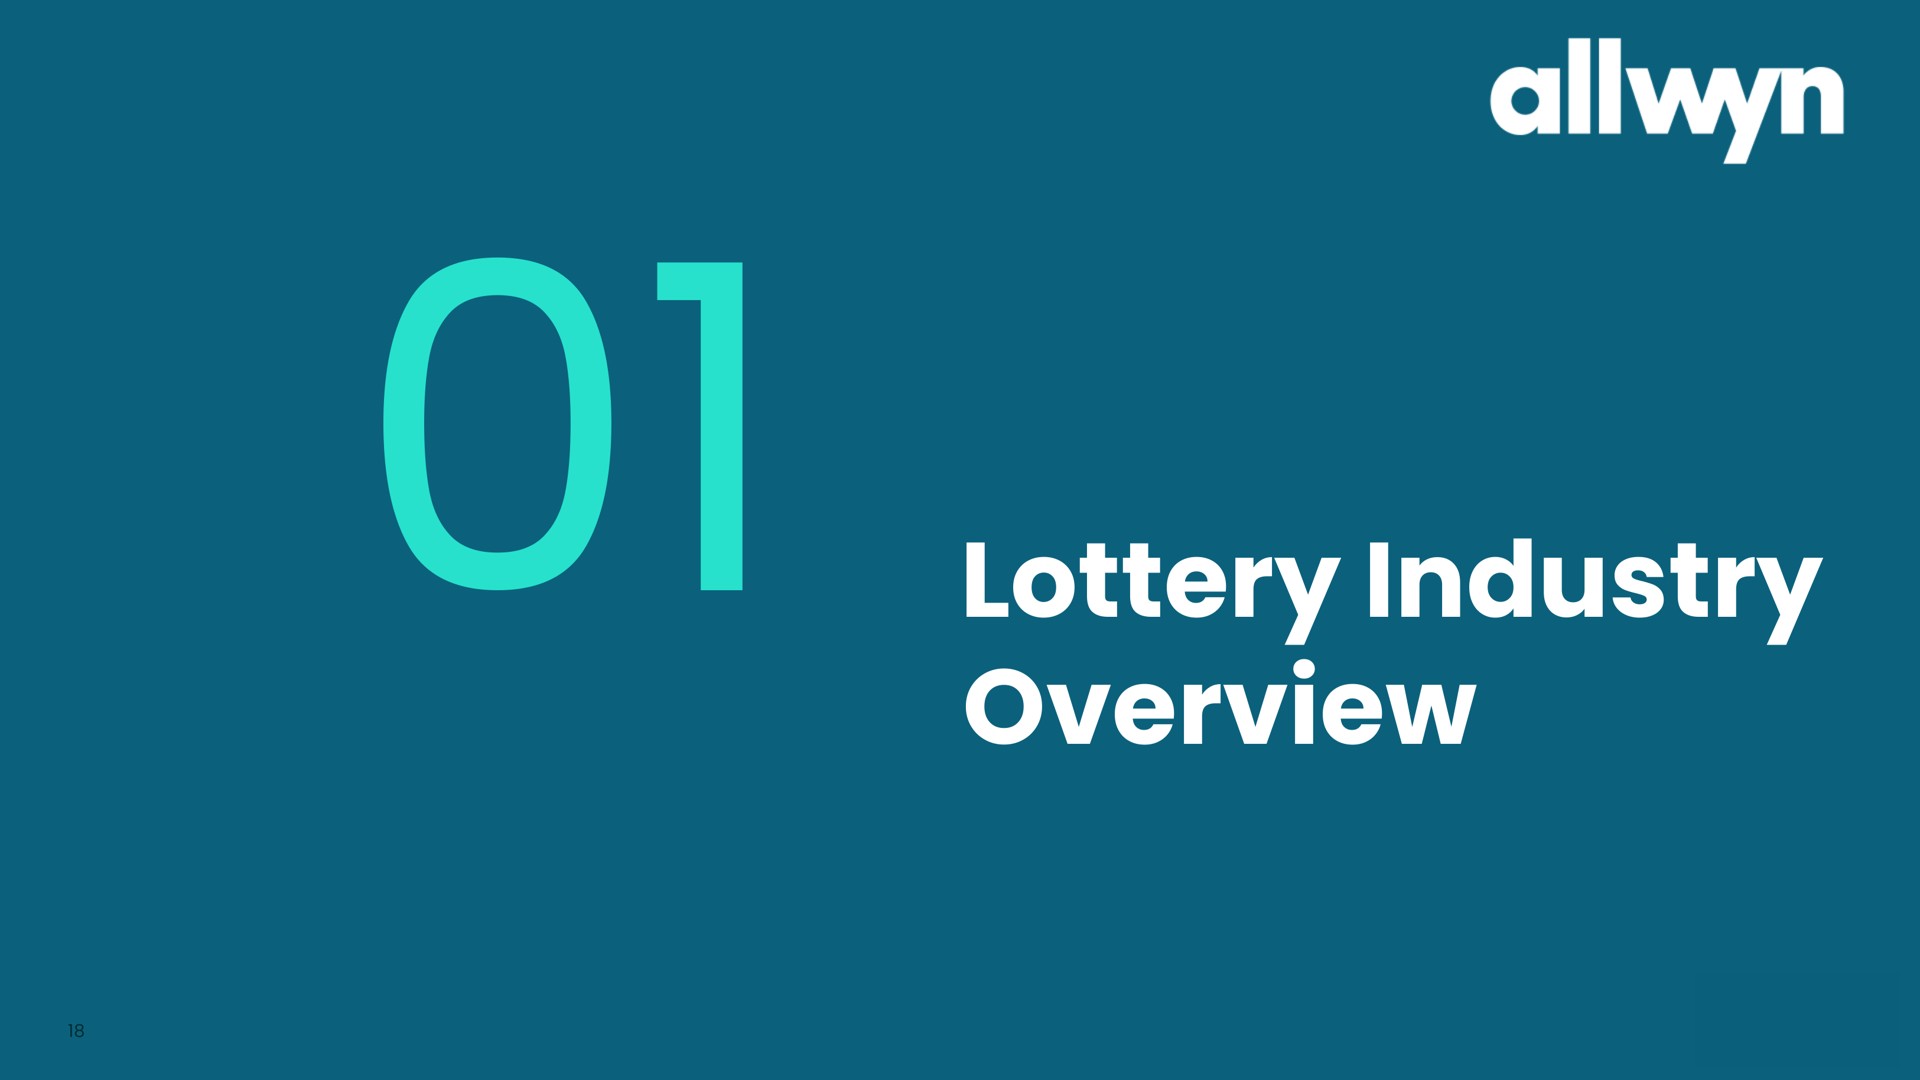 lottery industry overview | Allwyn